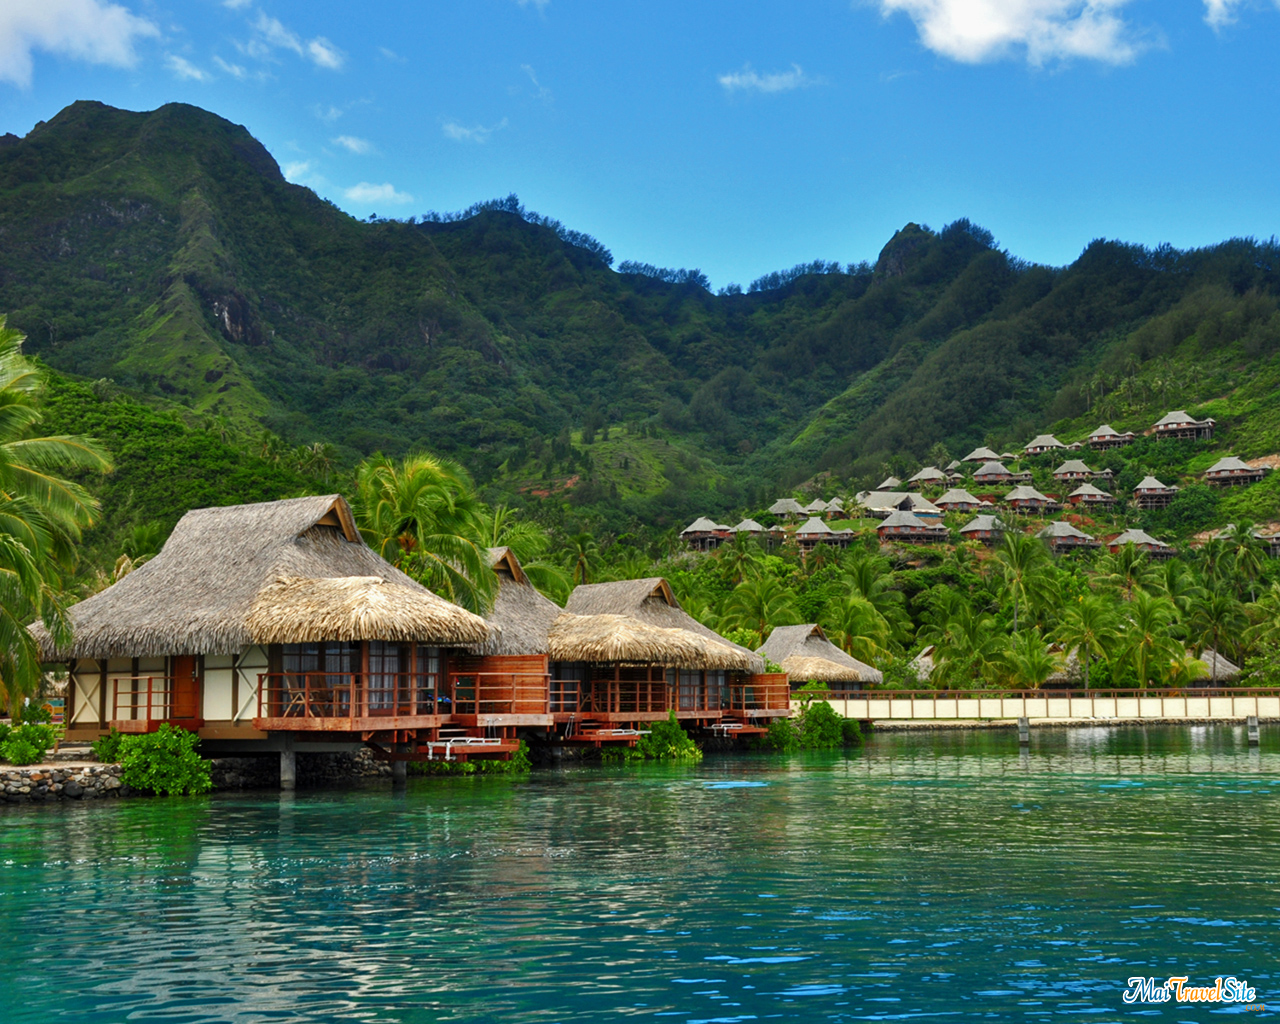 Tahiti Background